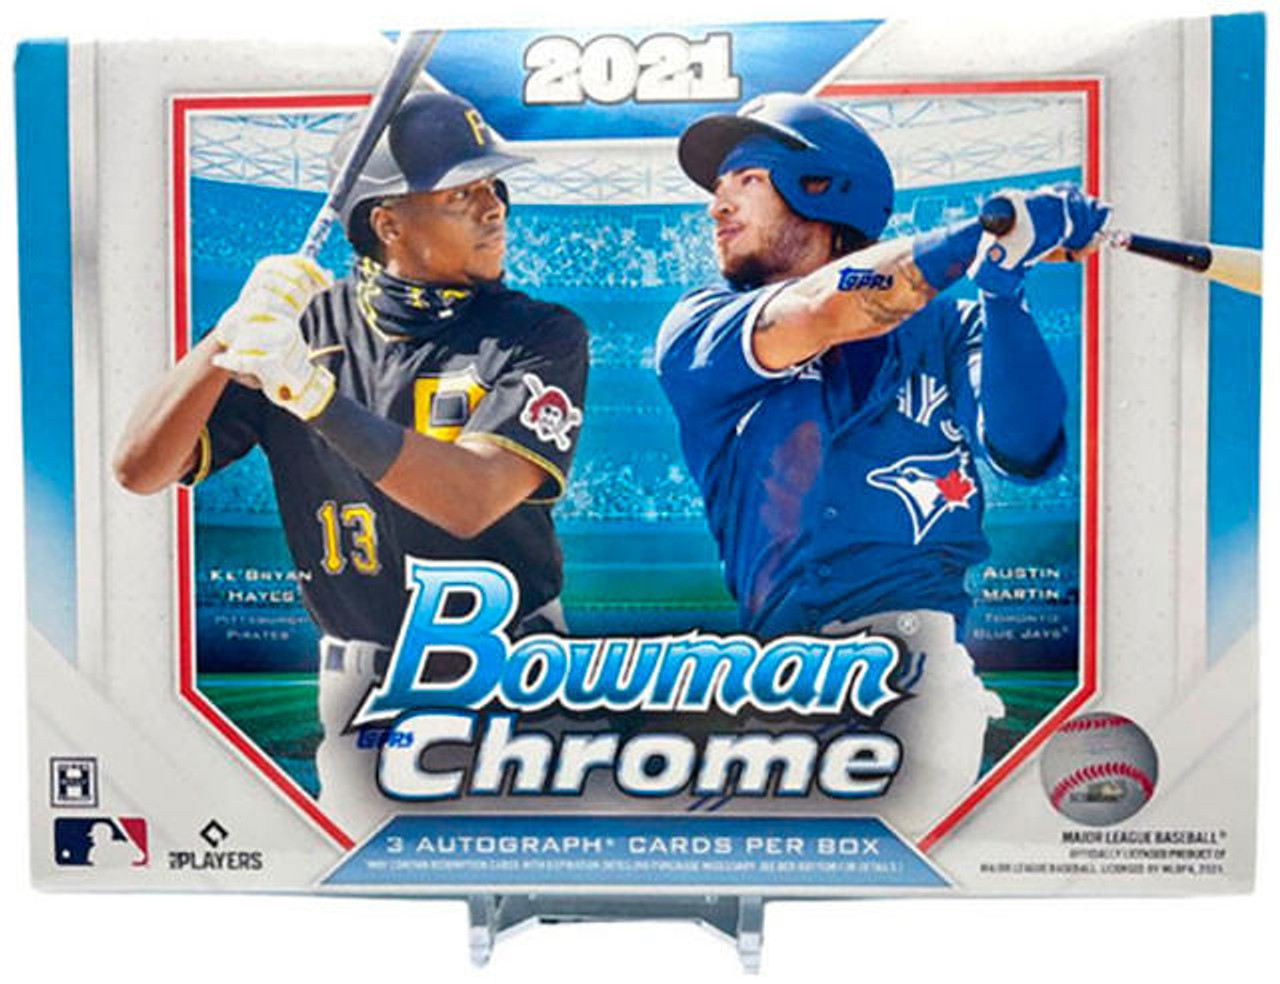  2021 Bowman Chrome Baseball Hobby Box (12 Packs/5